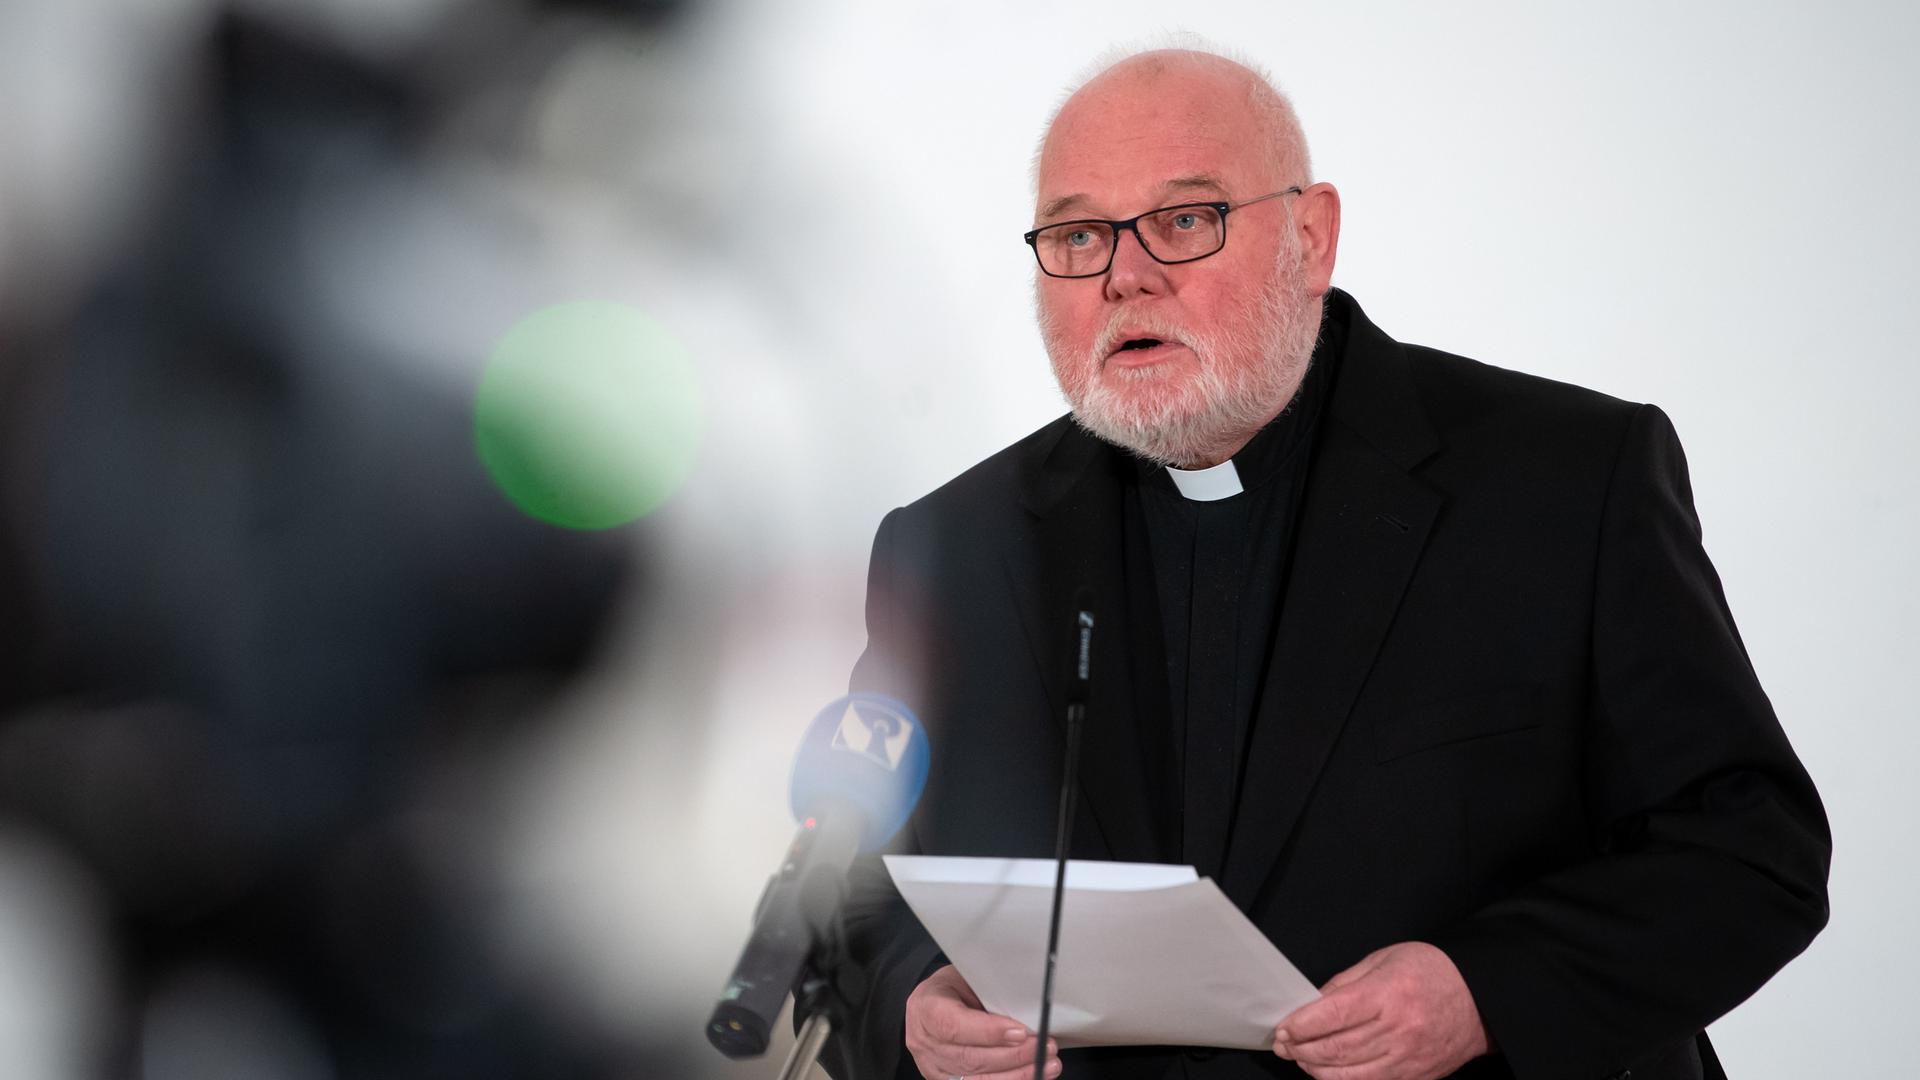 Katholische Kirche - Kardinal Marx trifft Missbrauchsopfer und verspricht bessere Aufarbeitung